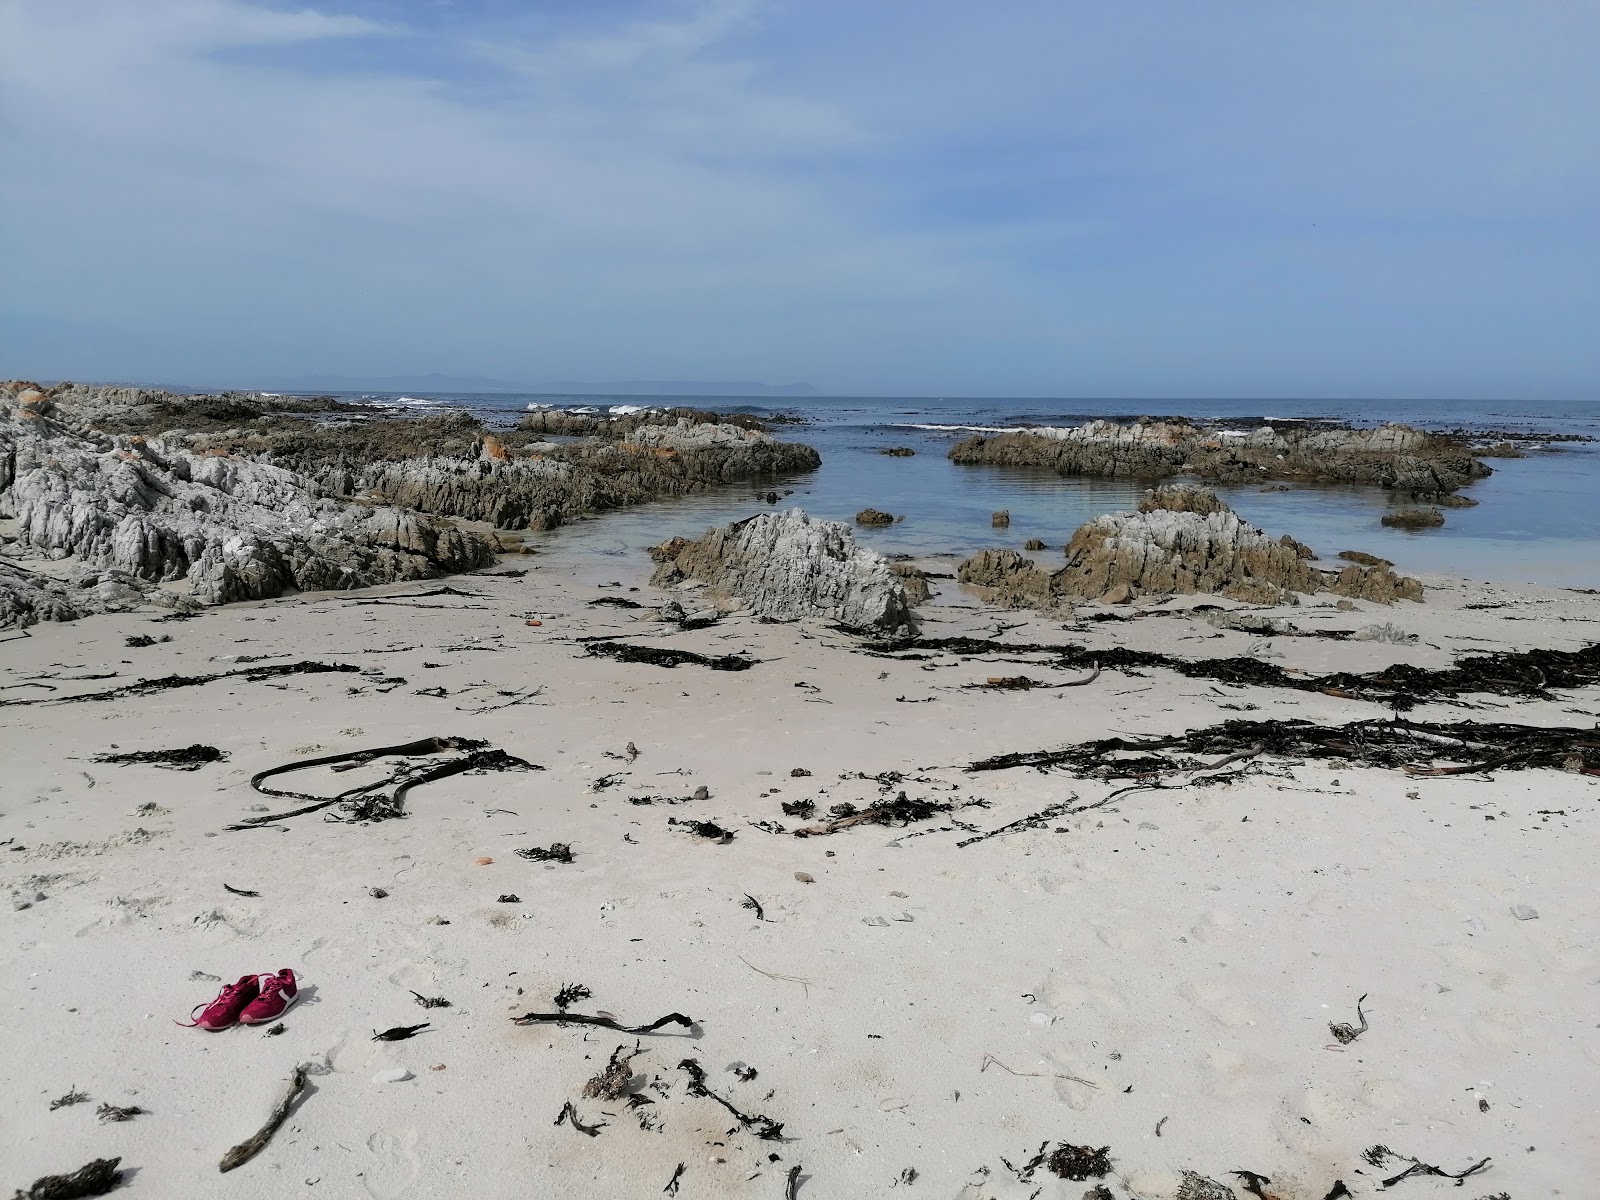 Fotografie cu Breakfast Bay beach cu o suprafață de nisip strălucitor și pietre